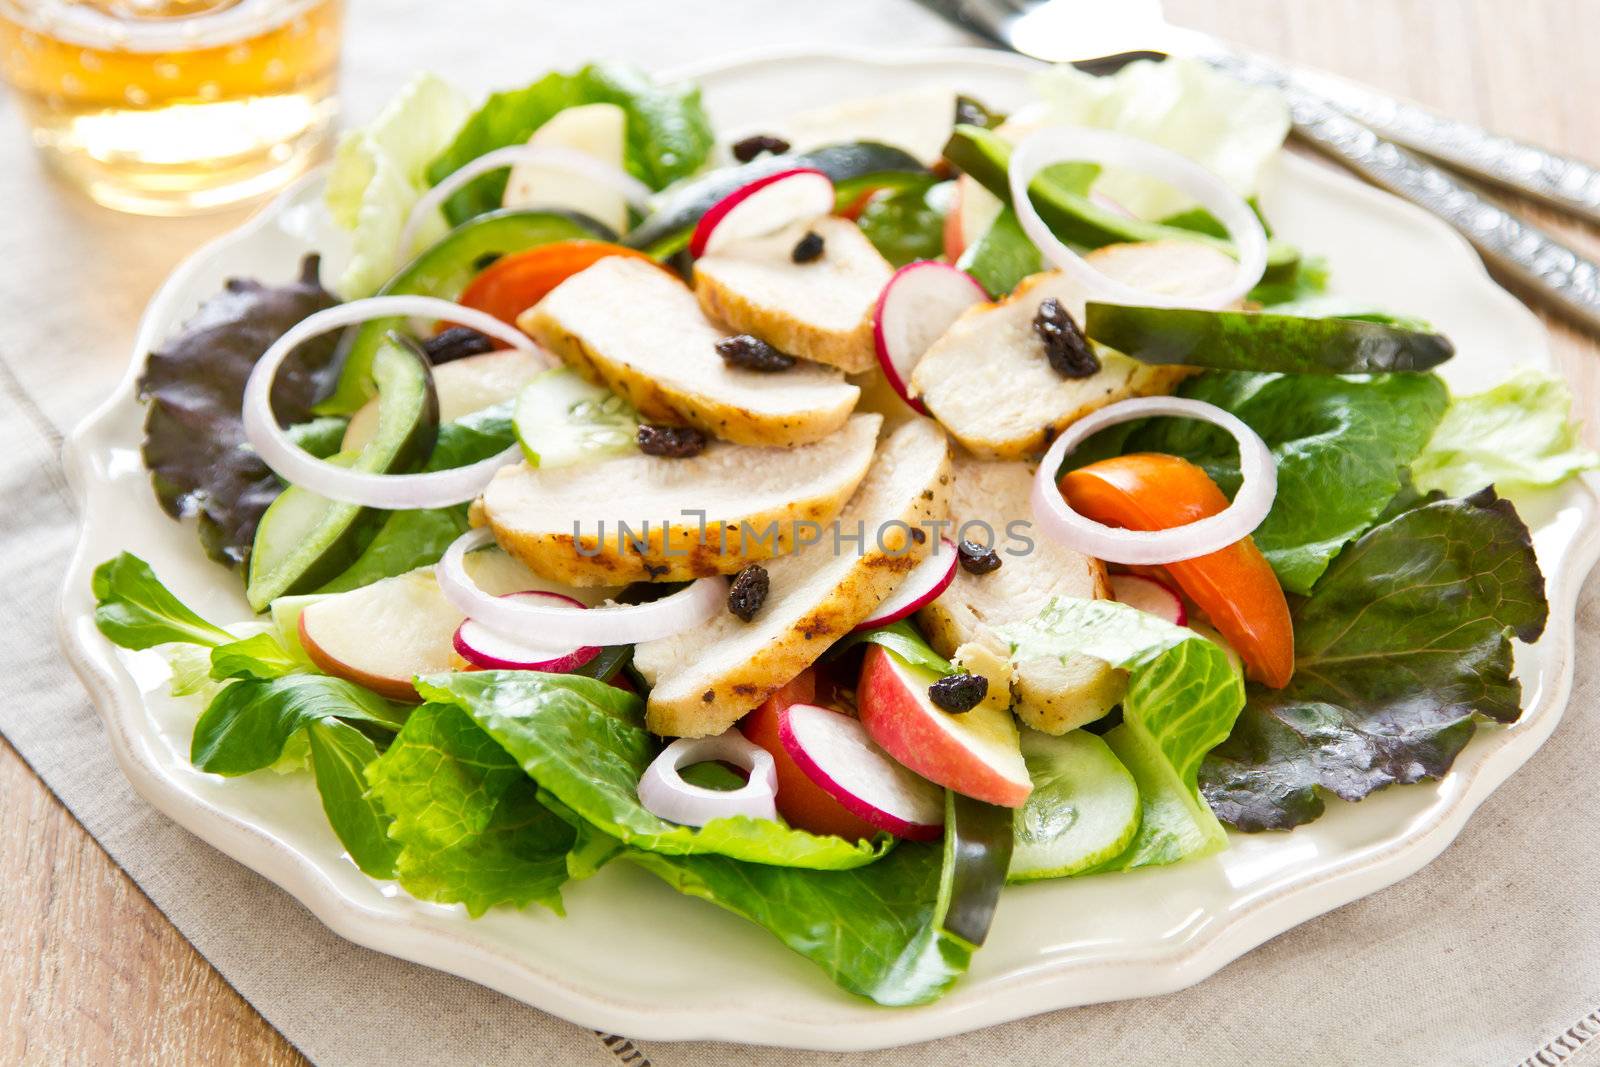 Grilled chicken salad by vanillaechoes